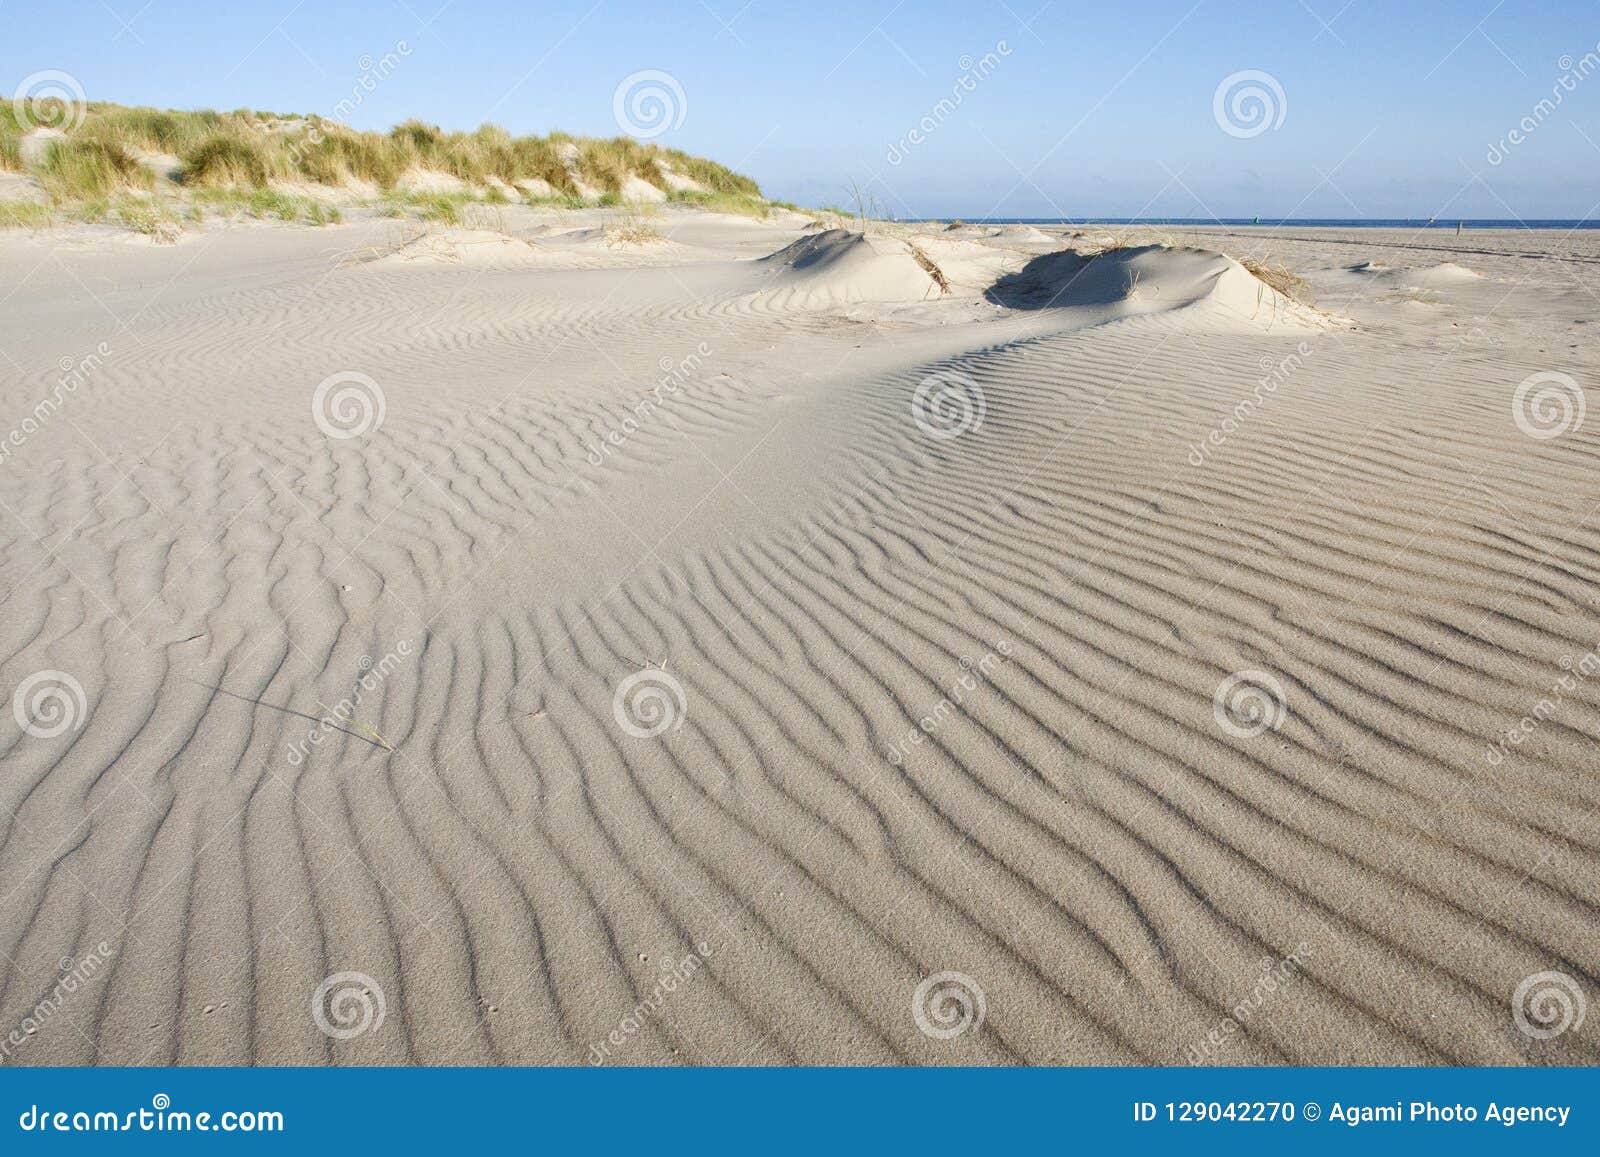 strand en duinen oostpunt, vlieland (nederland / netherlands)